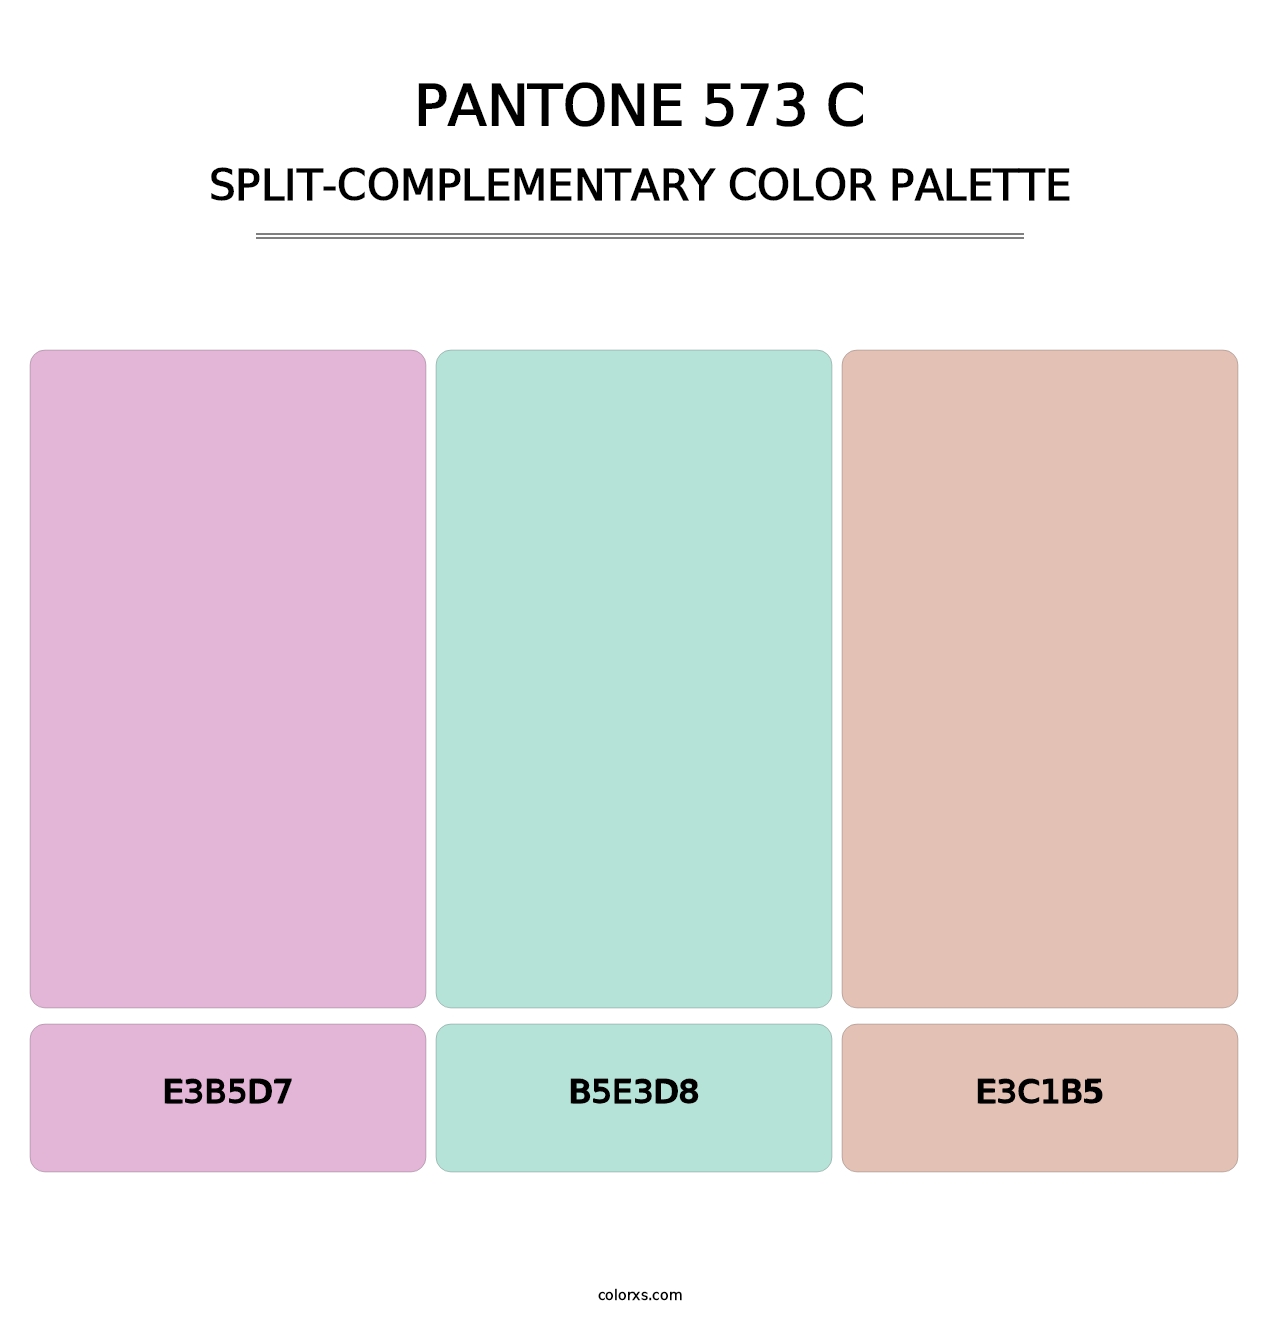 PANTONE 573 C - Split-Complementary Color Palette